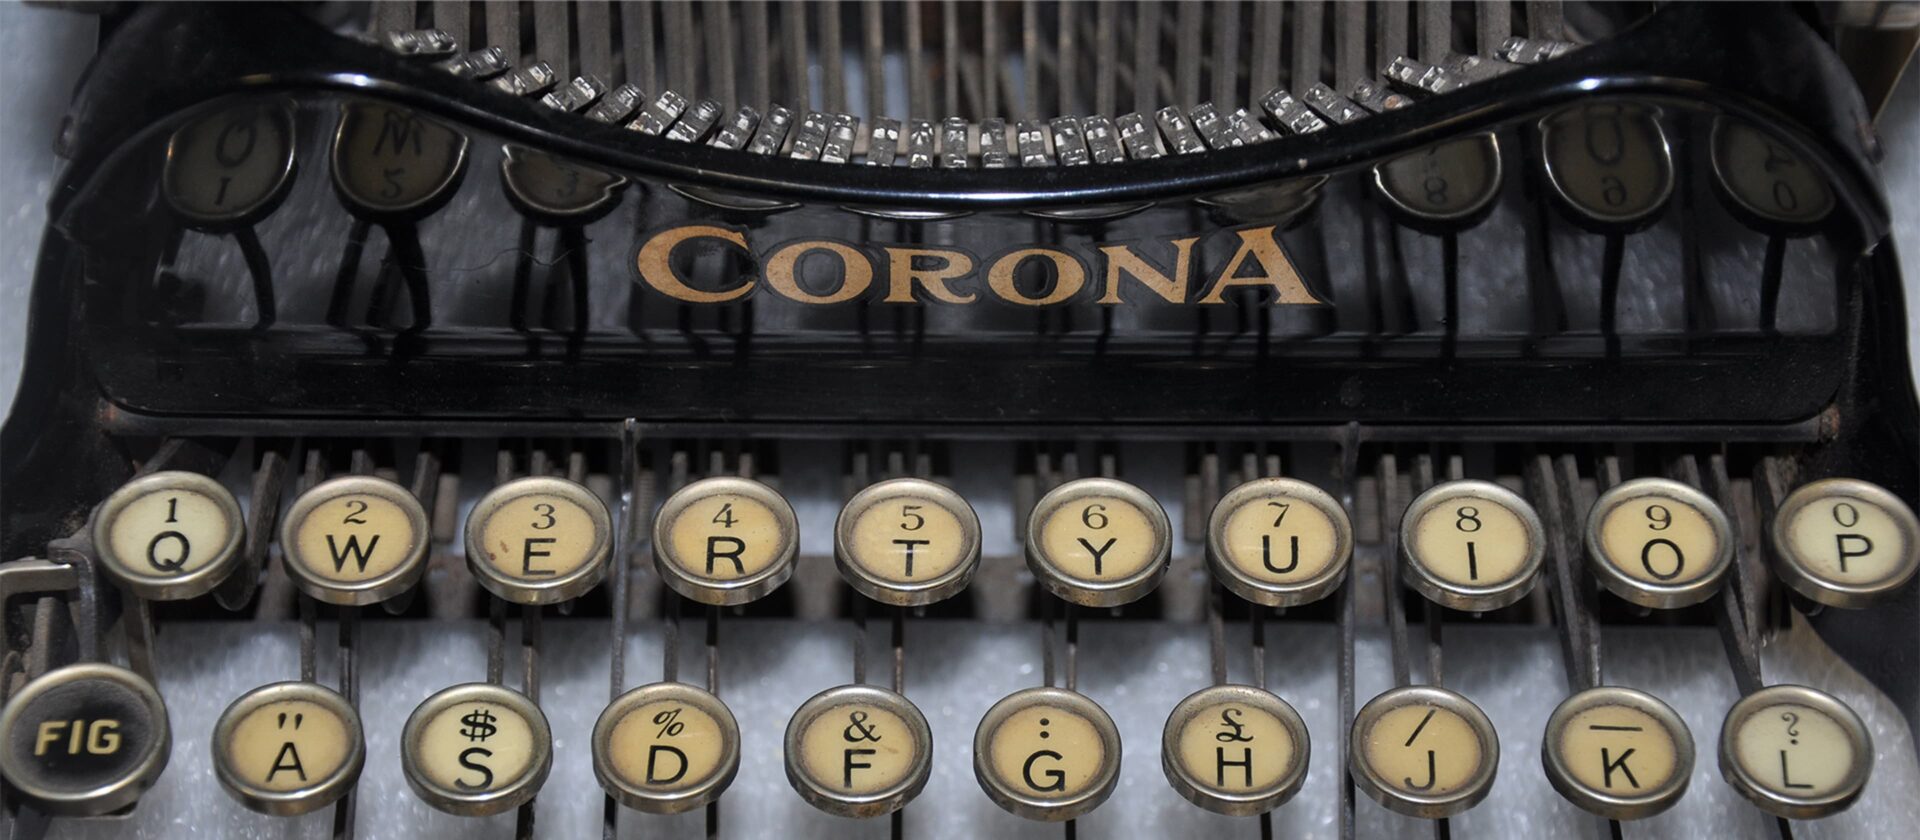 A typewriter showing the keyboard